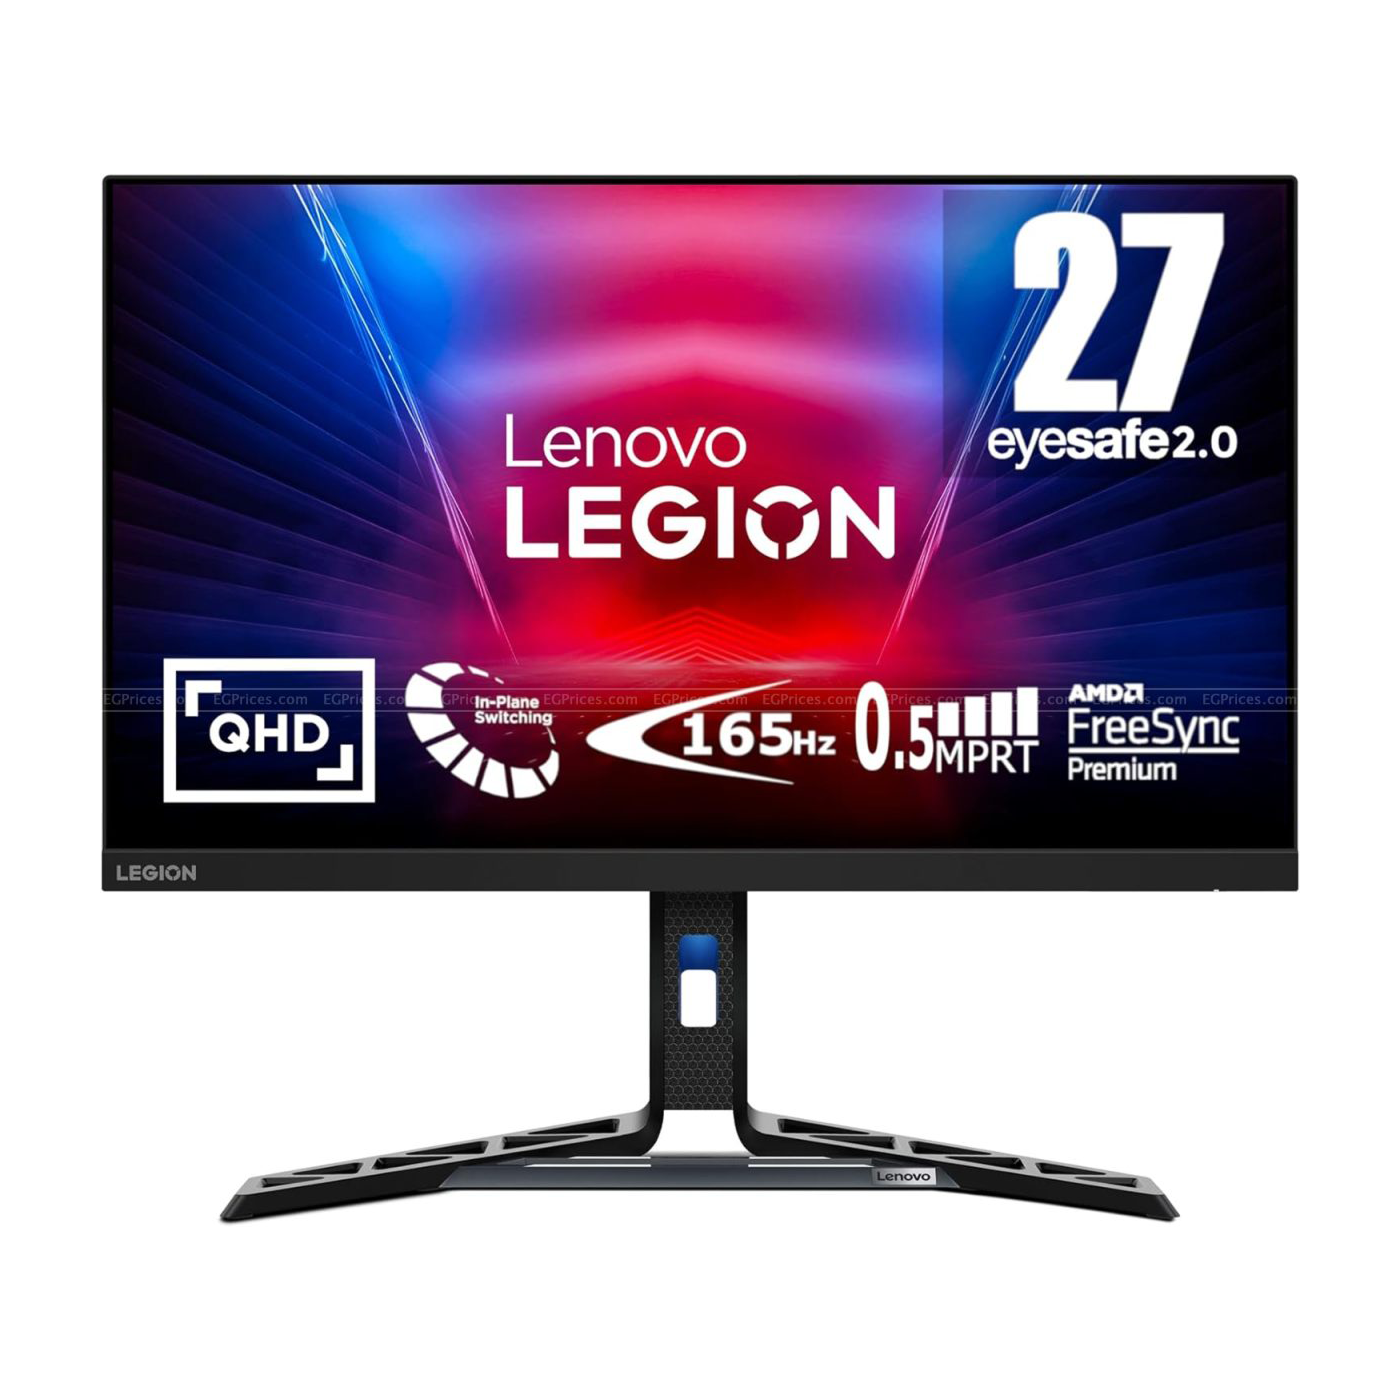 Lenovo Legion R27q-30 27 Inch, QHD Gaming Monitor with Eyesafe